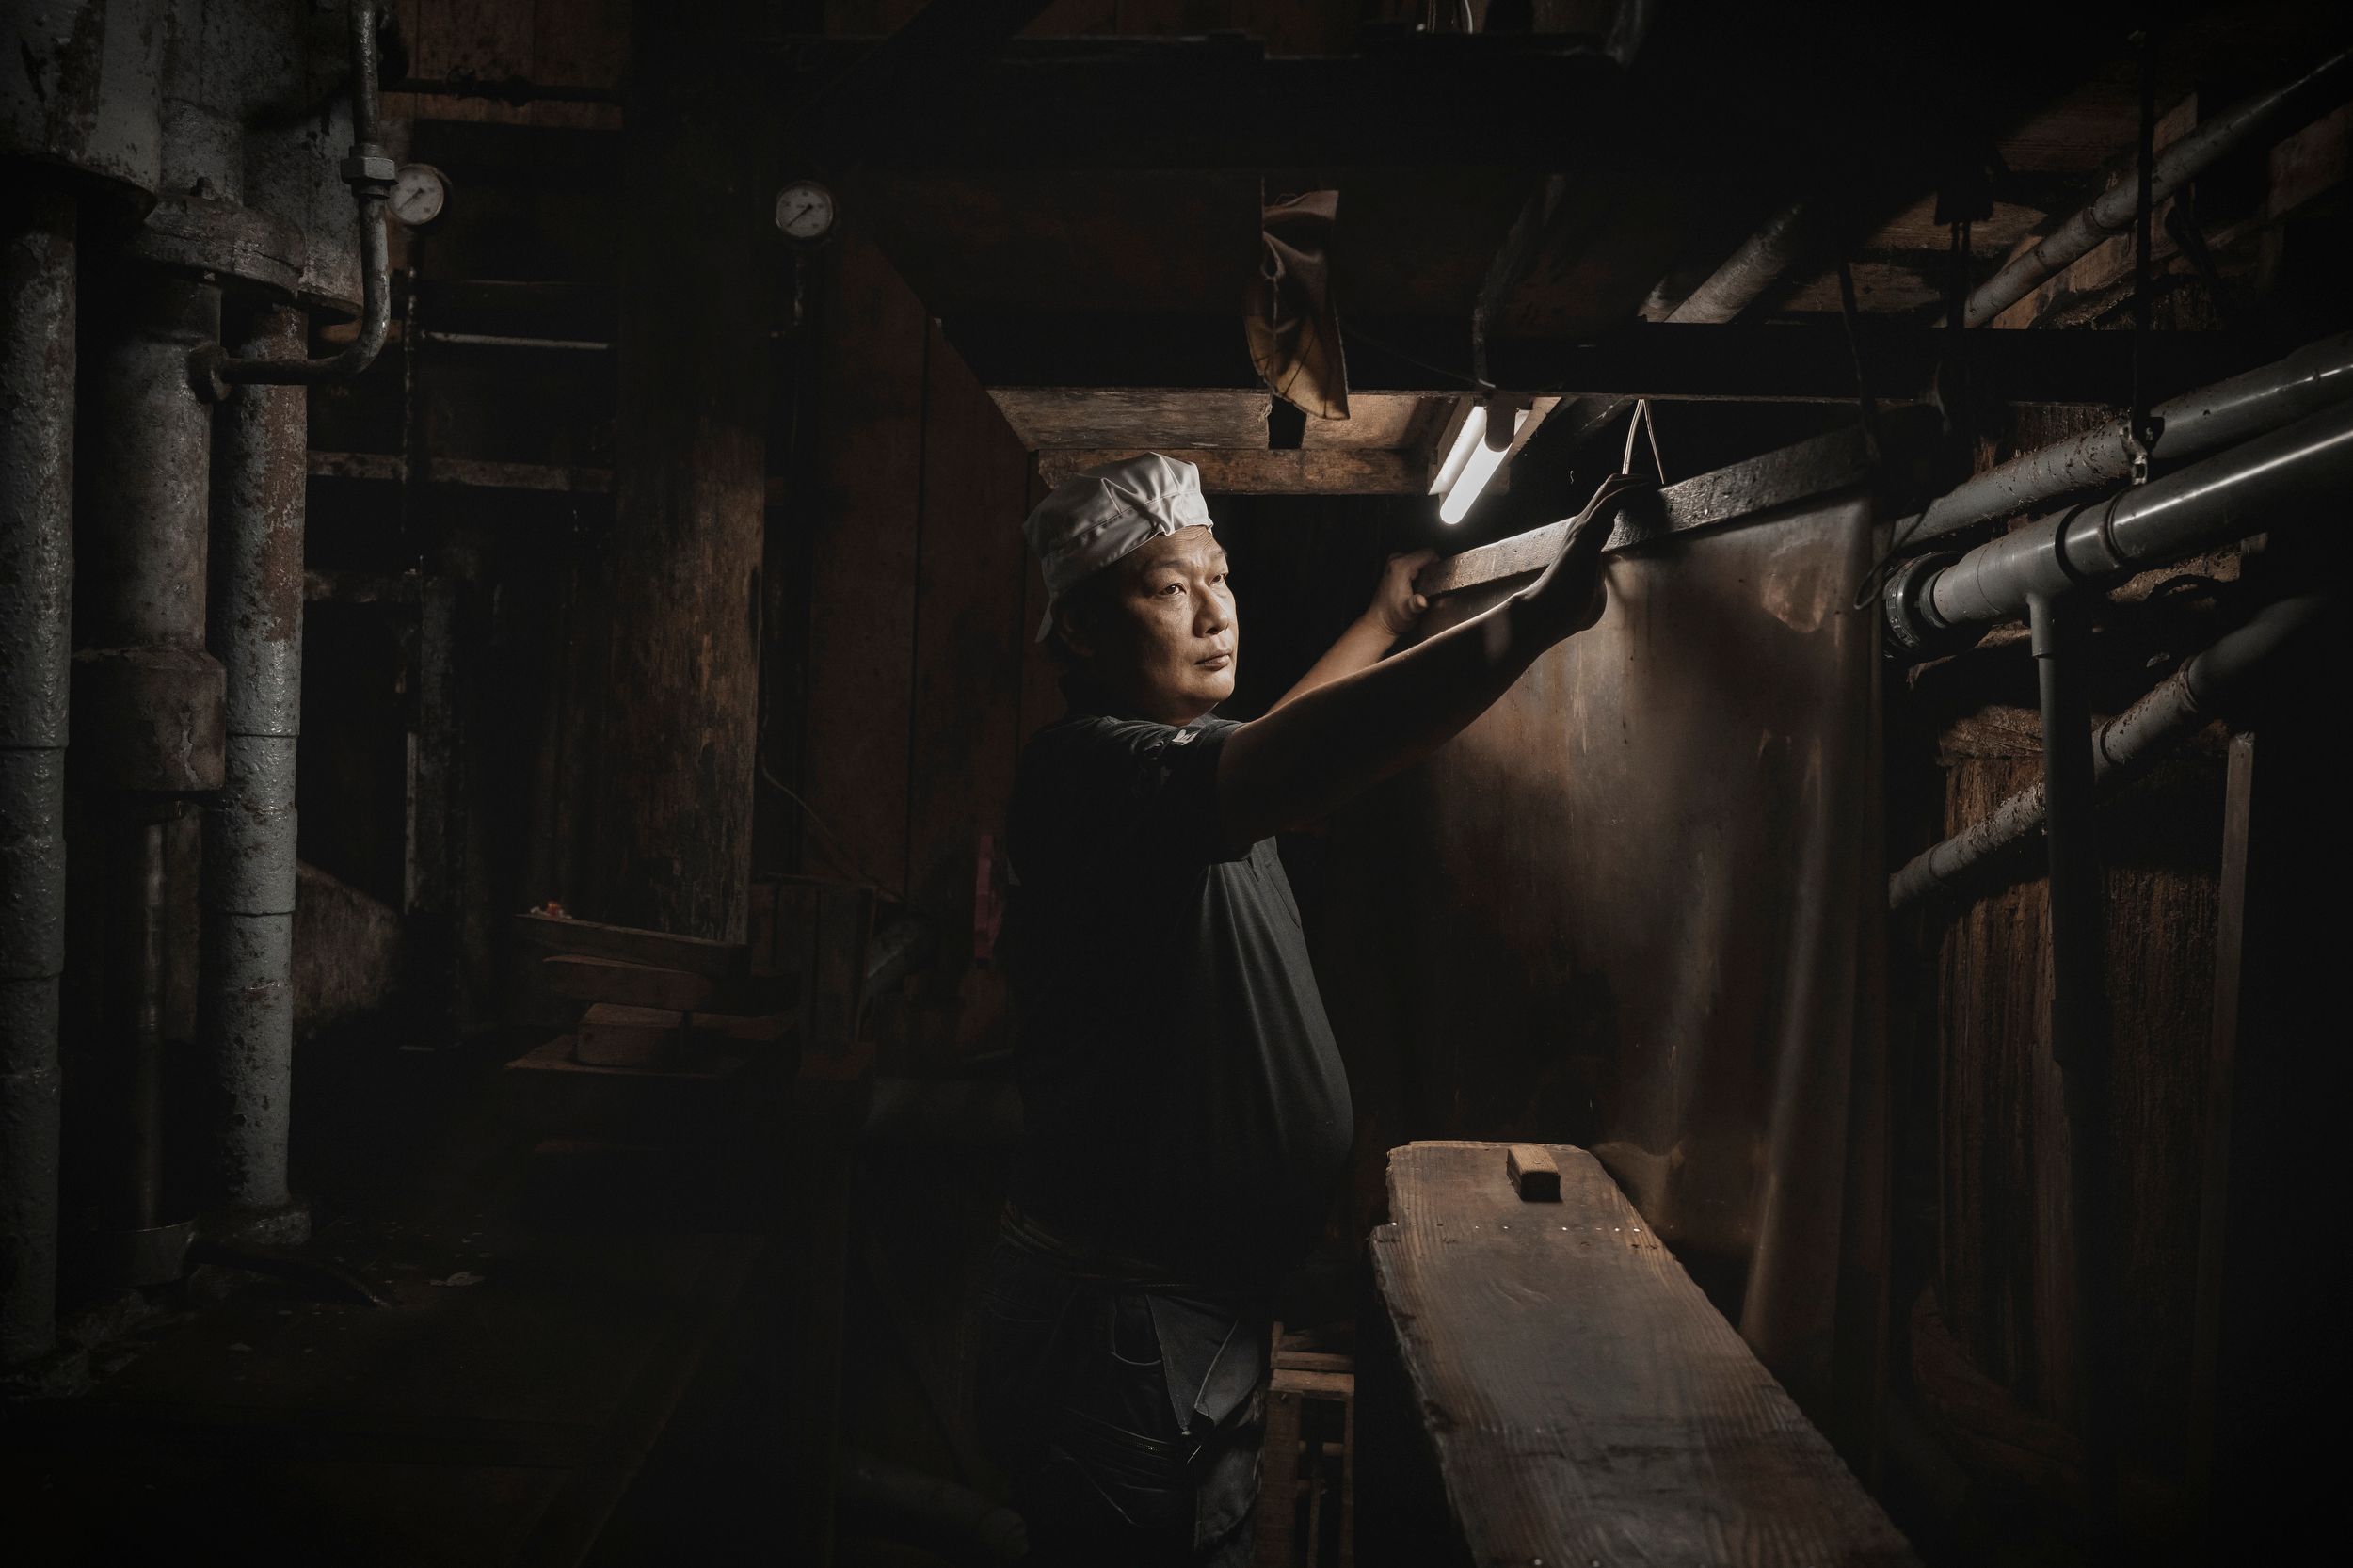 Yuasa es un pequeño pueblo costero de la prefectura de Wakayama, ubicado en la ruta Kiiji del Kumano Kodo, que en 2017 fue designado Patrimonio de Japón por ser el lugar de nacimiento de la salsa de soja. Tsunenori Kano es un fermentador de séptima generación, pues su familia lleva casi dos siglos elaborando este popular condimento siguiendo la misma receta original.